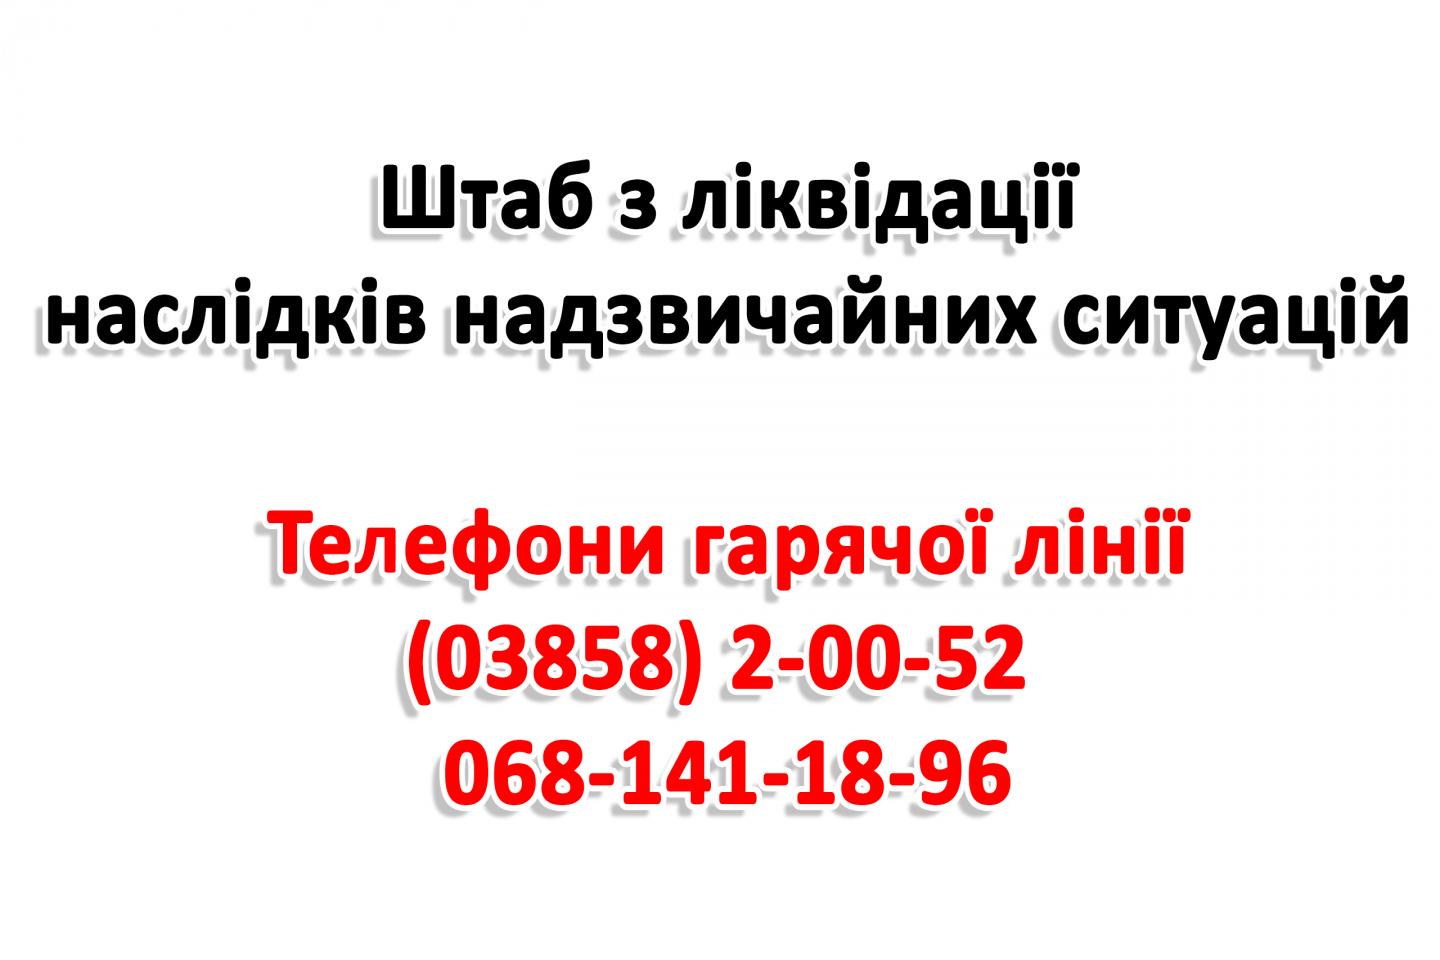 http://dunrada.gov.ua/uploadfile/archive_news/2020/04/09/2020-04-09_9811/images/images-32750.jpg